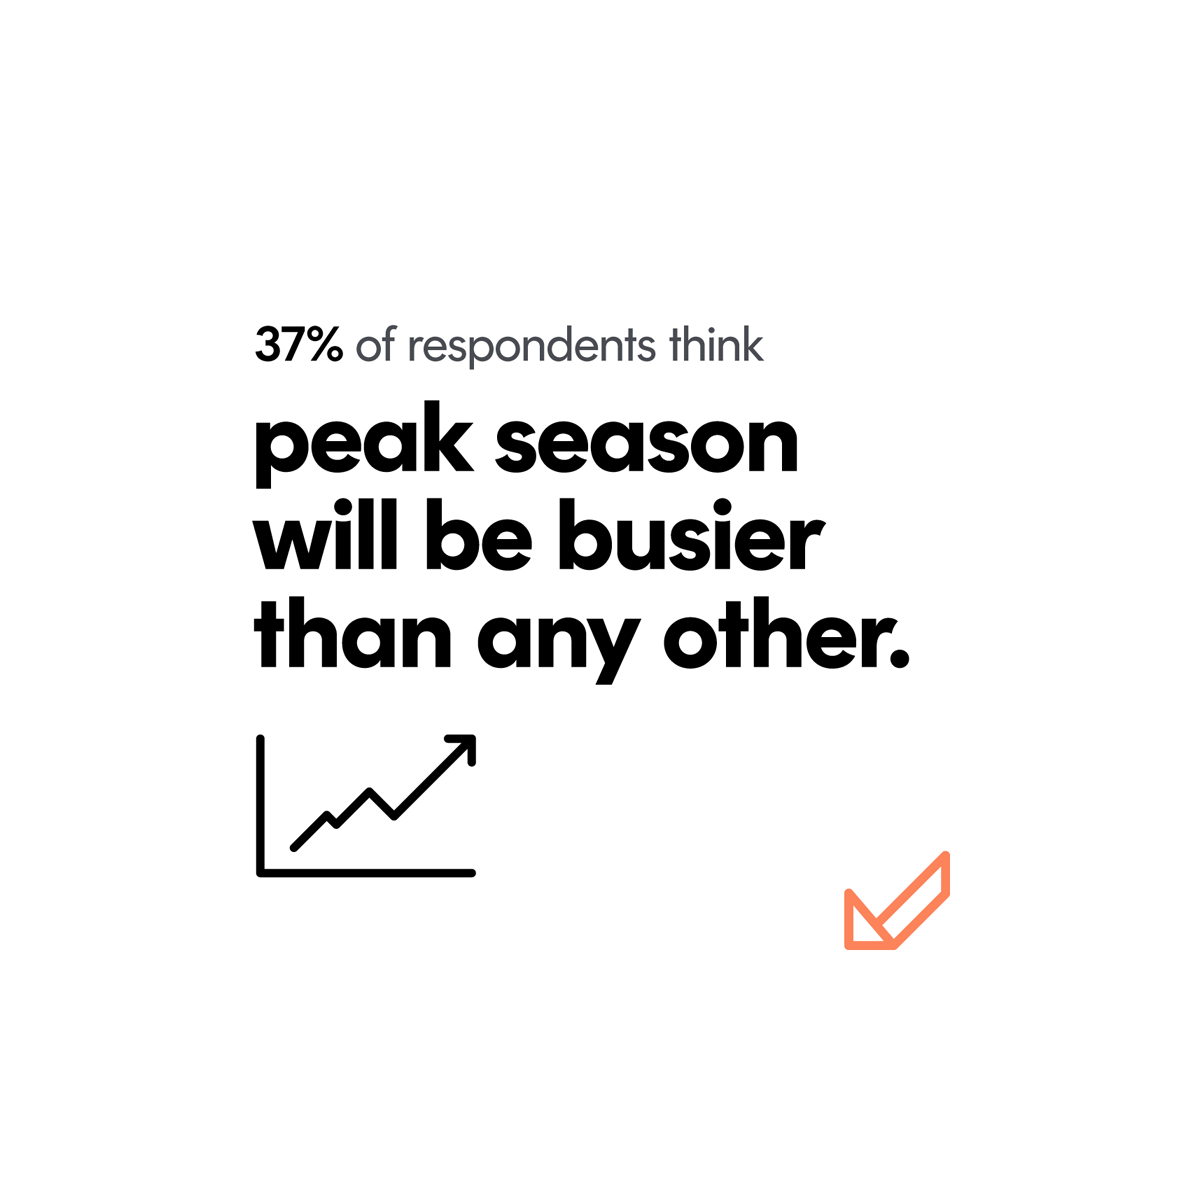 Peak season findings